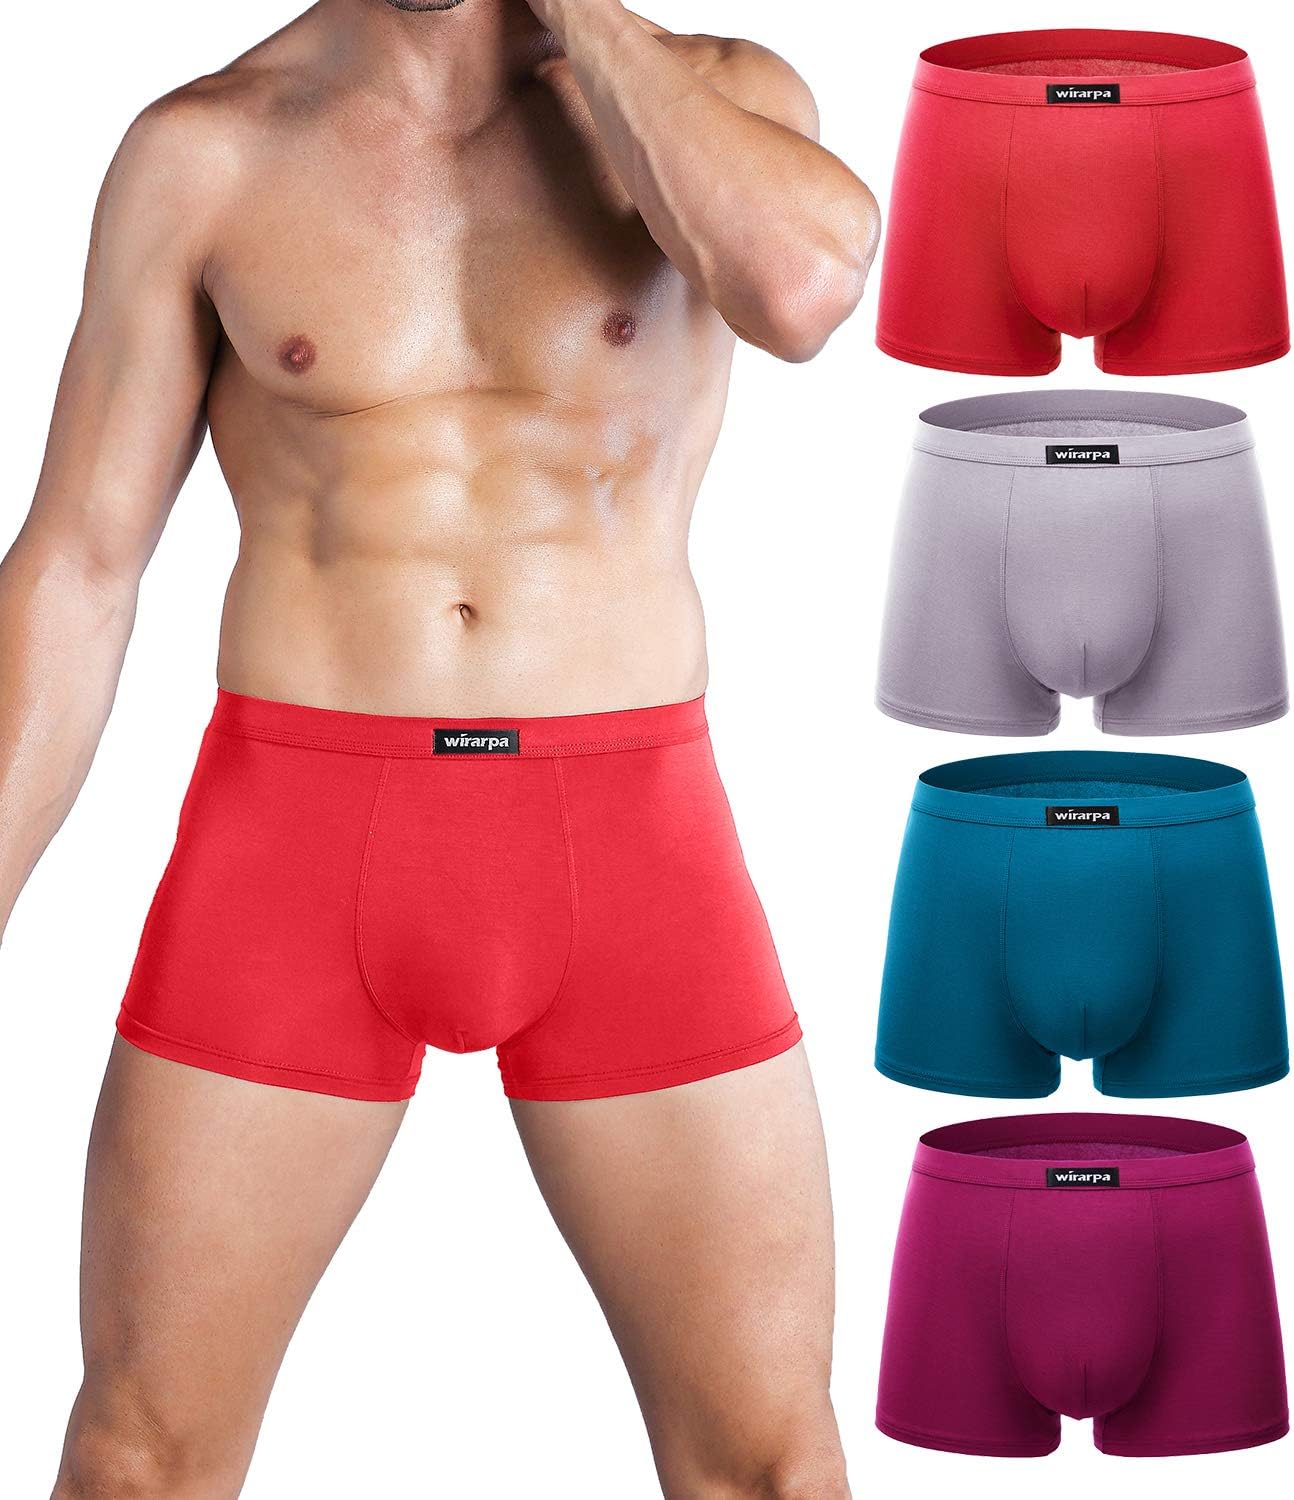 wirarpa Men's Breathable 100 Cotton Briefs Underwear No Elastic